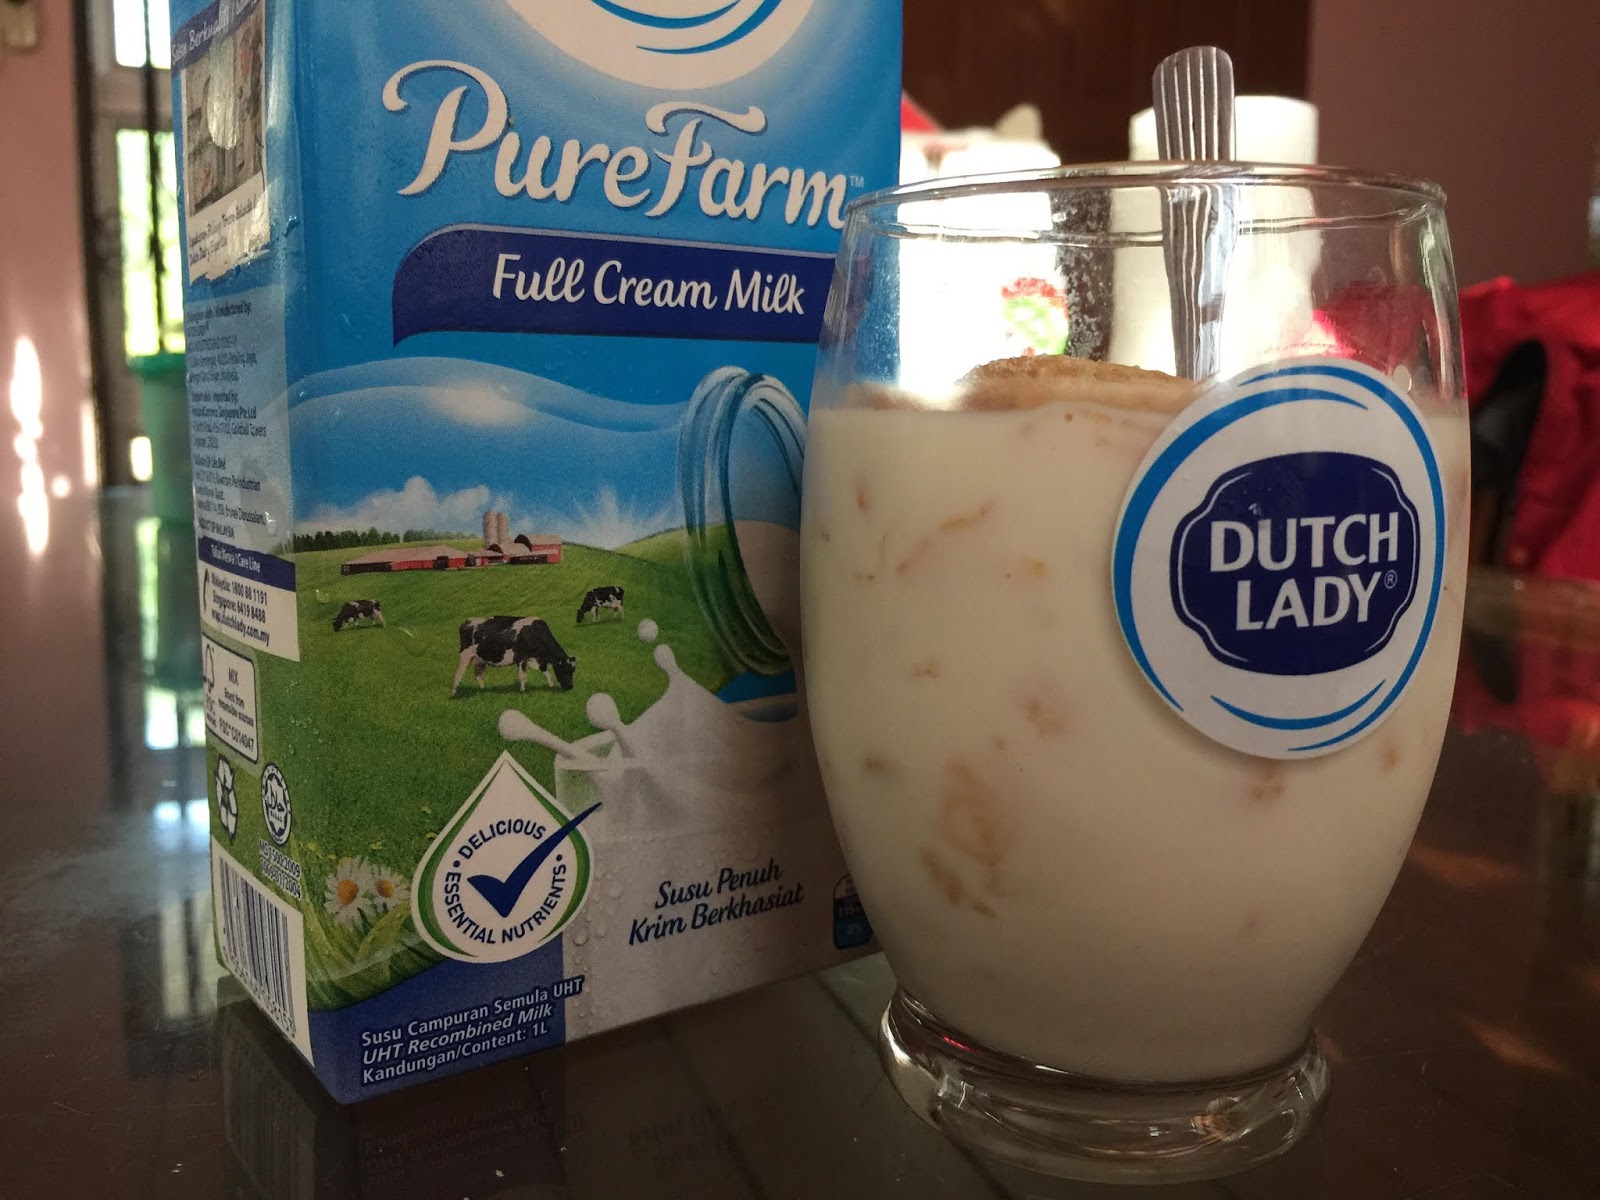 susu dutch lady purefarm, sarapan berkhasiat, jaga badan untuk sihat